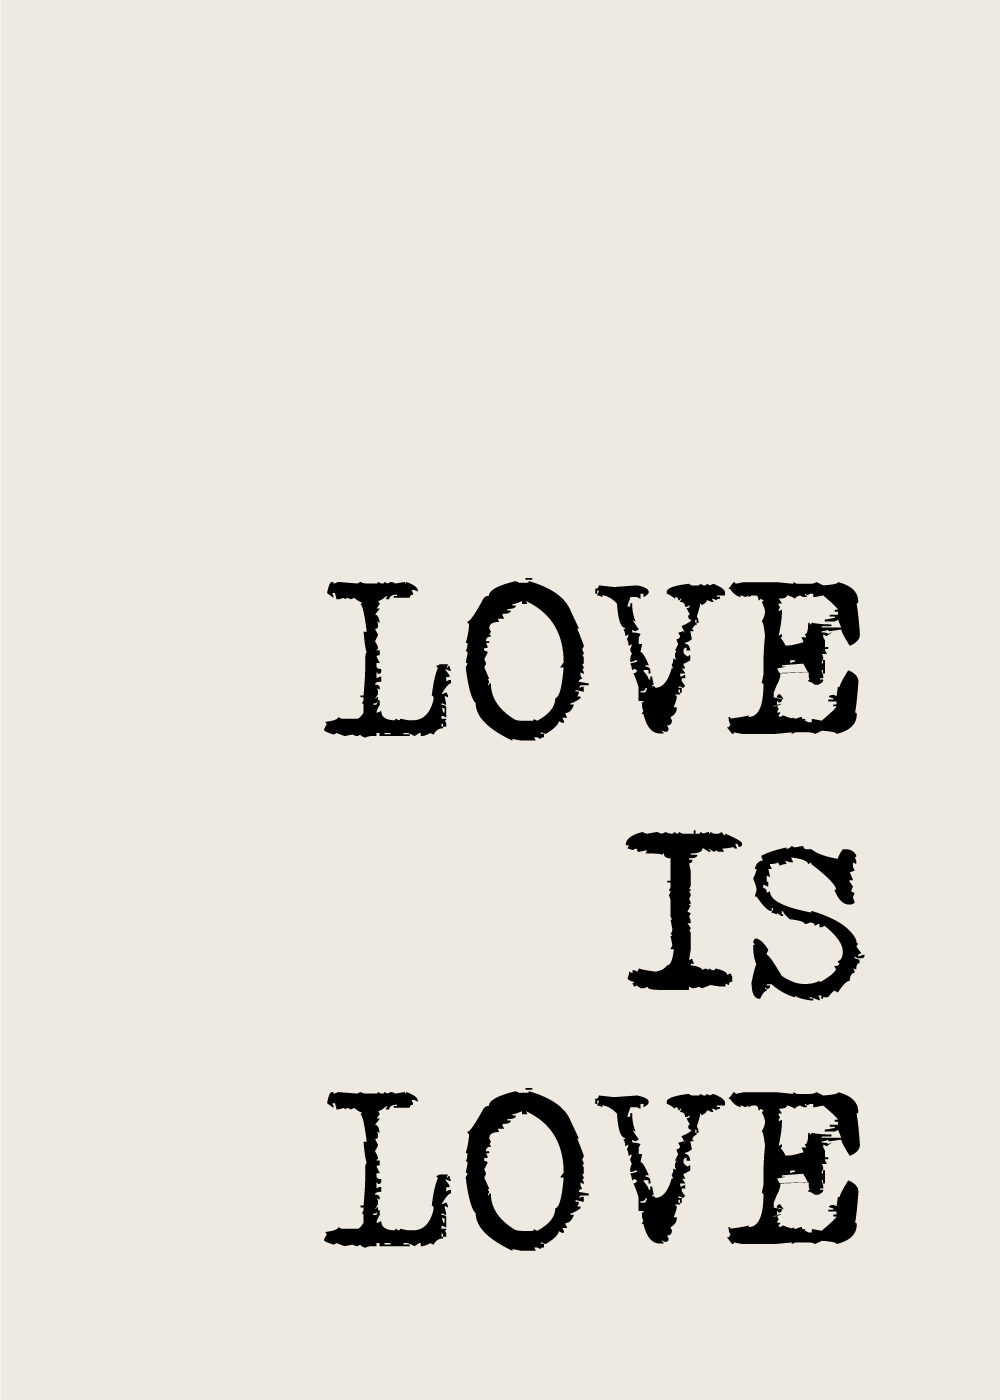 is love - LGBT plakat Plakat om kærlighed og mangfoldighed